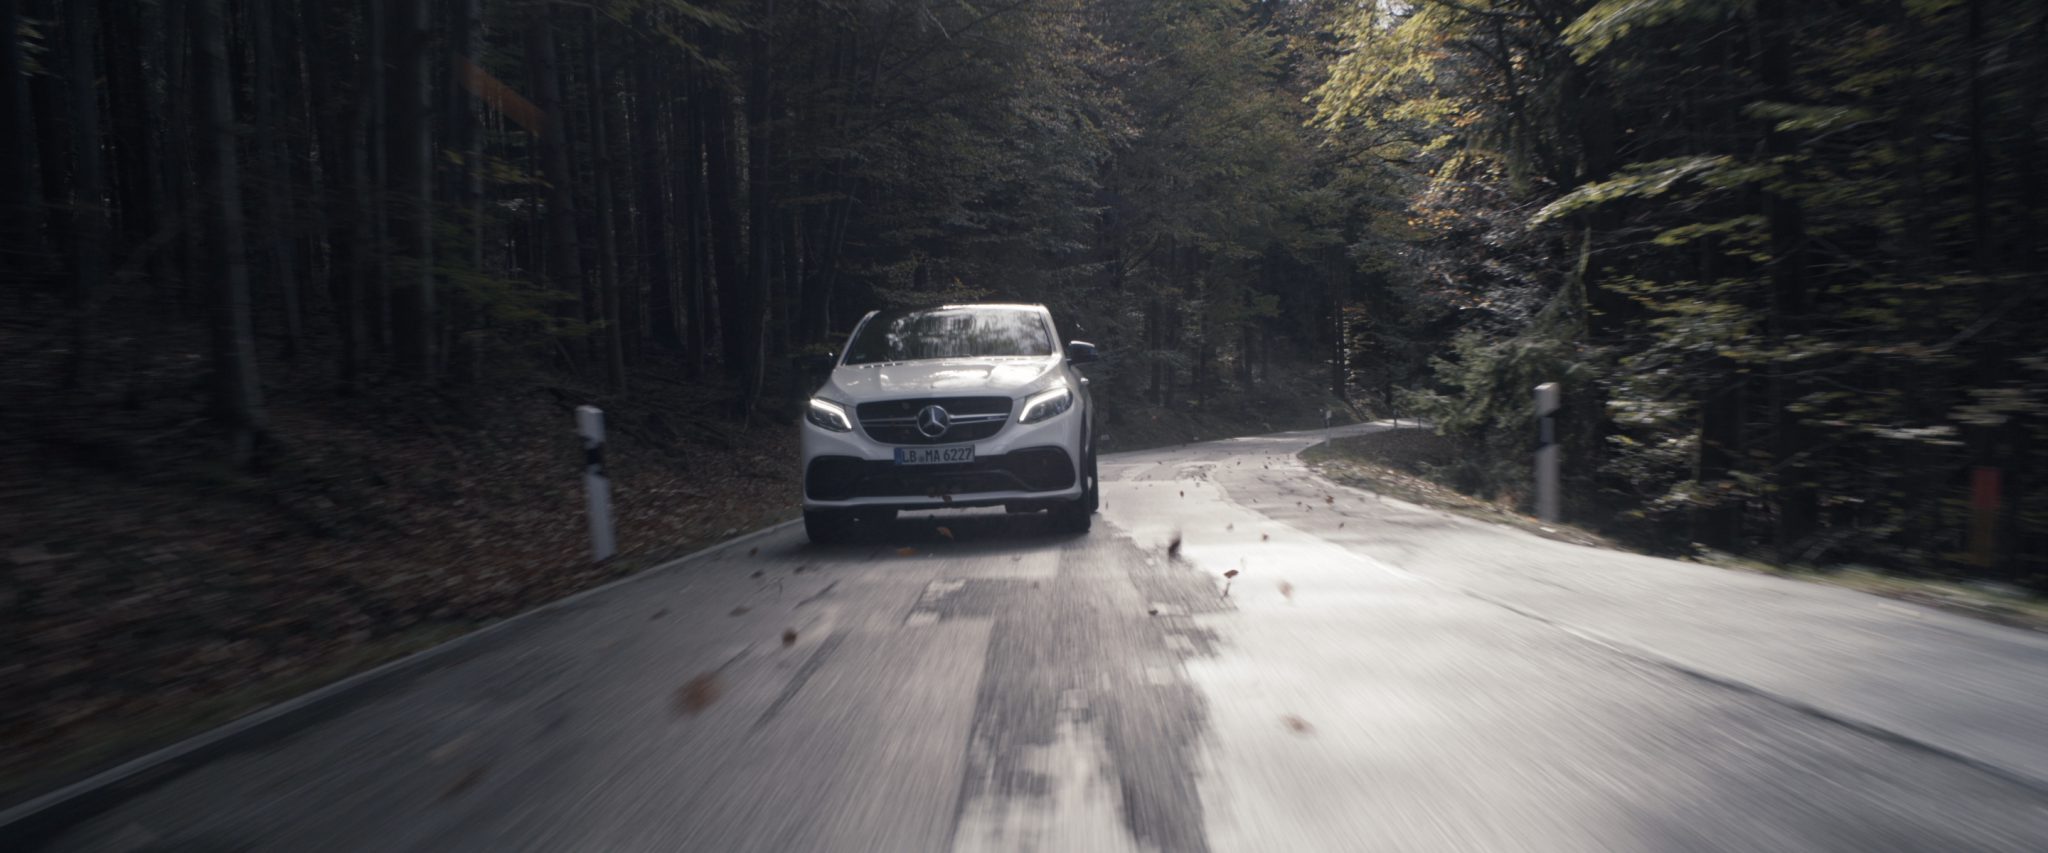 Mercedes-Benz car driving through deep forest